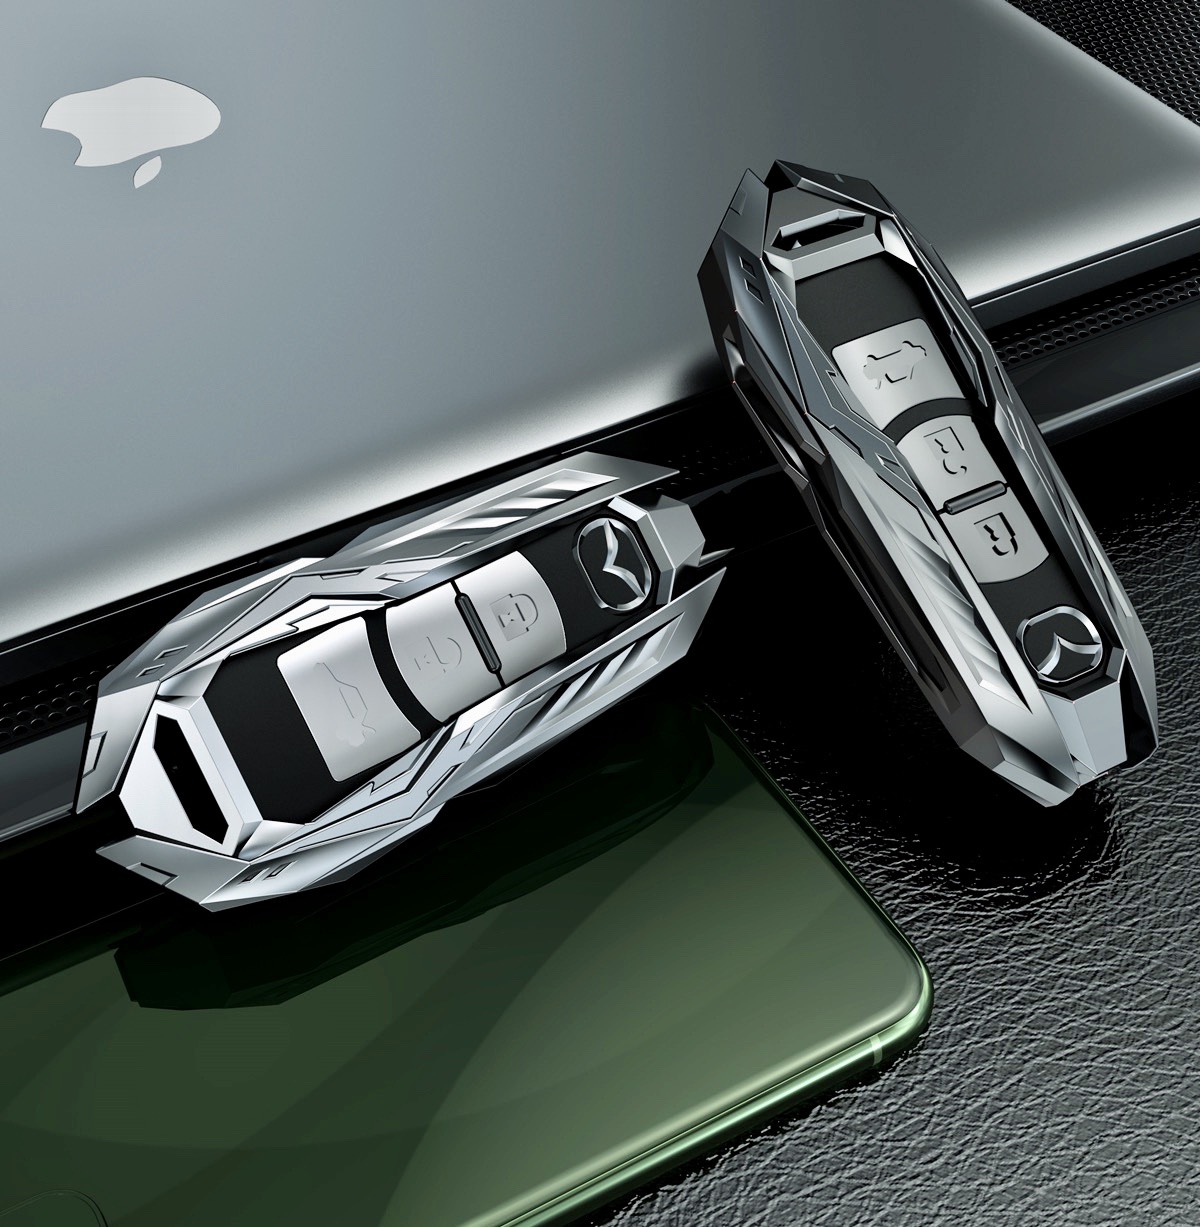 Ốp chìa khóa oto Mazda (2,3,6, CX5, CX8)  chất liệu metal cao cấp, bảo vệ smartkey tuyệt đối, kiểu dáng sang trọng và hiện đại